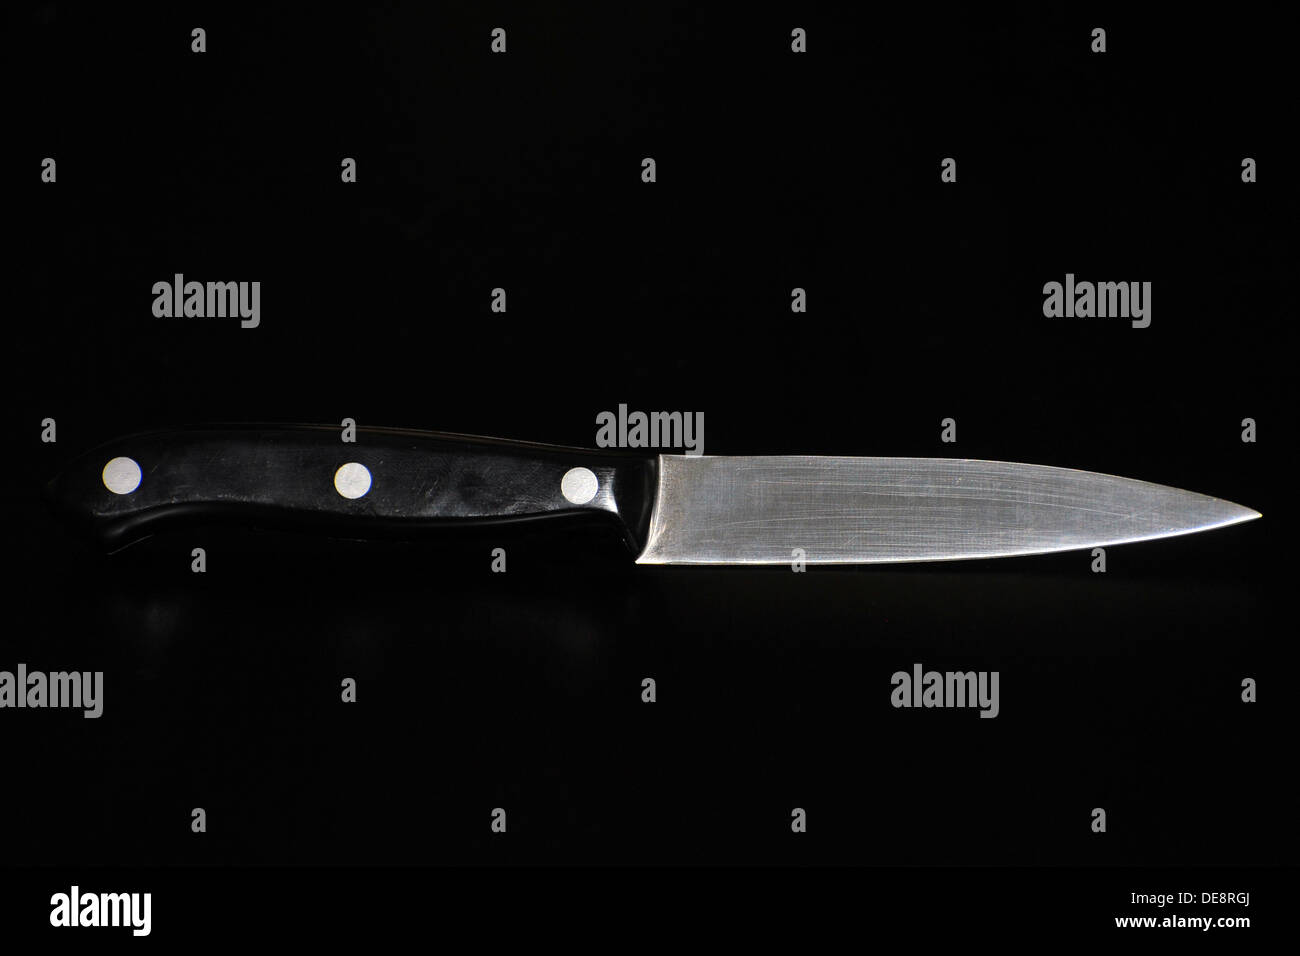 https://c8.alamy.com/comp/DE8RGJ/a-small-kitchen-knife-photographed-against-a-black-background-DE8RGJ.jpg